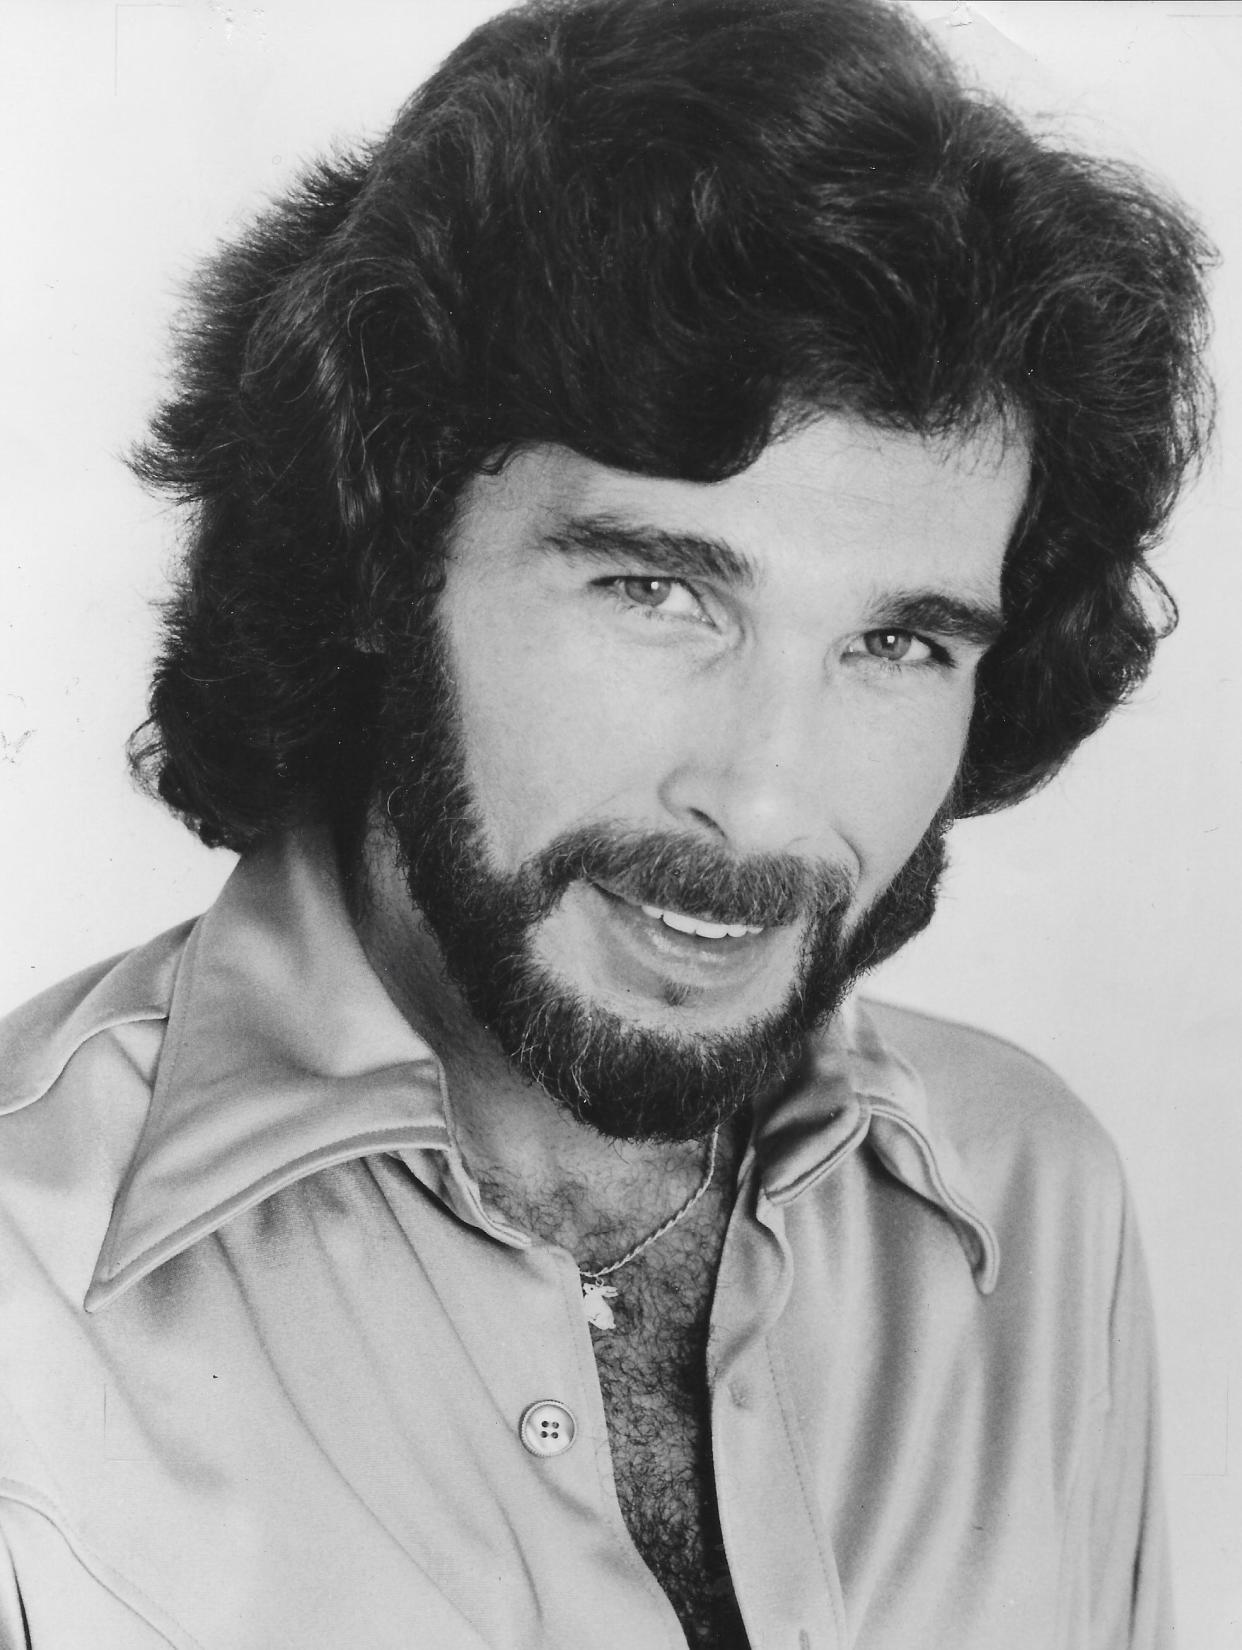 Singer Eddie Rabbitt takes a studio portrait in 1980.